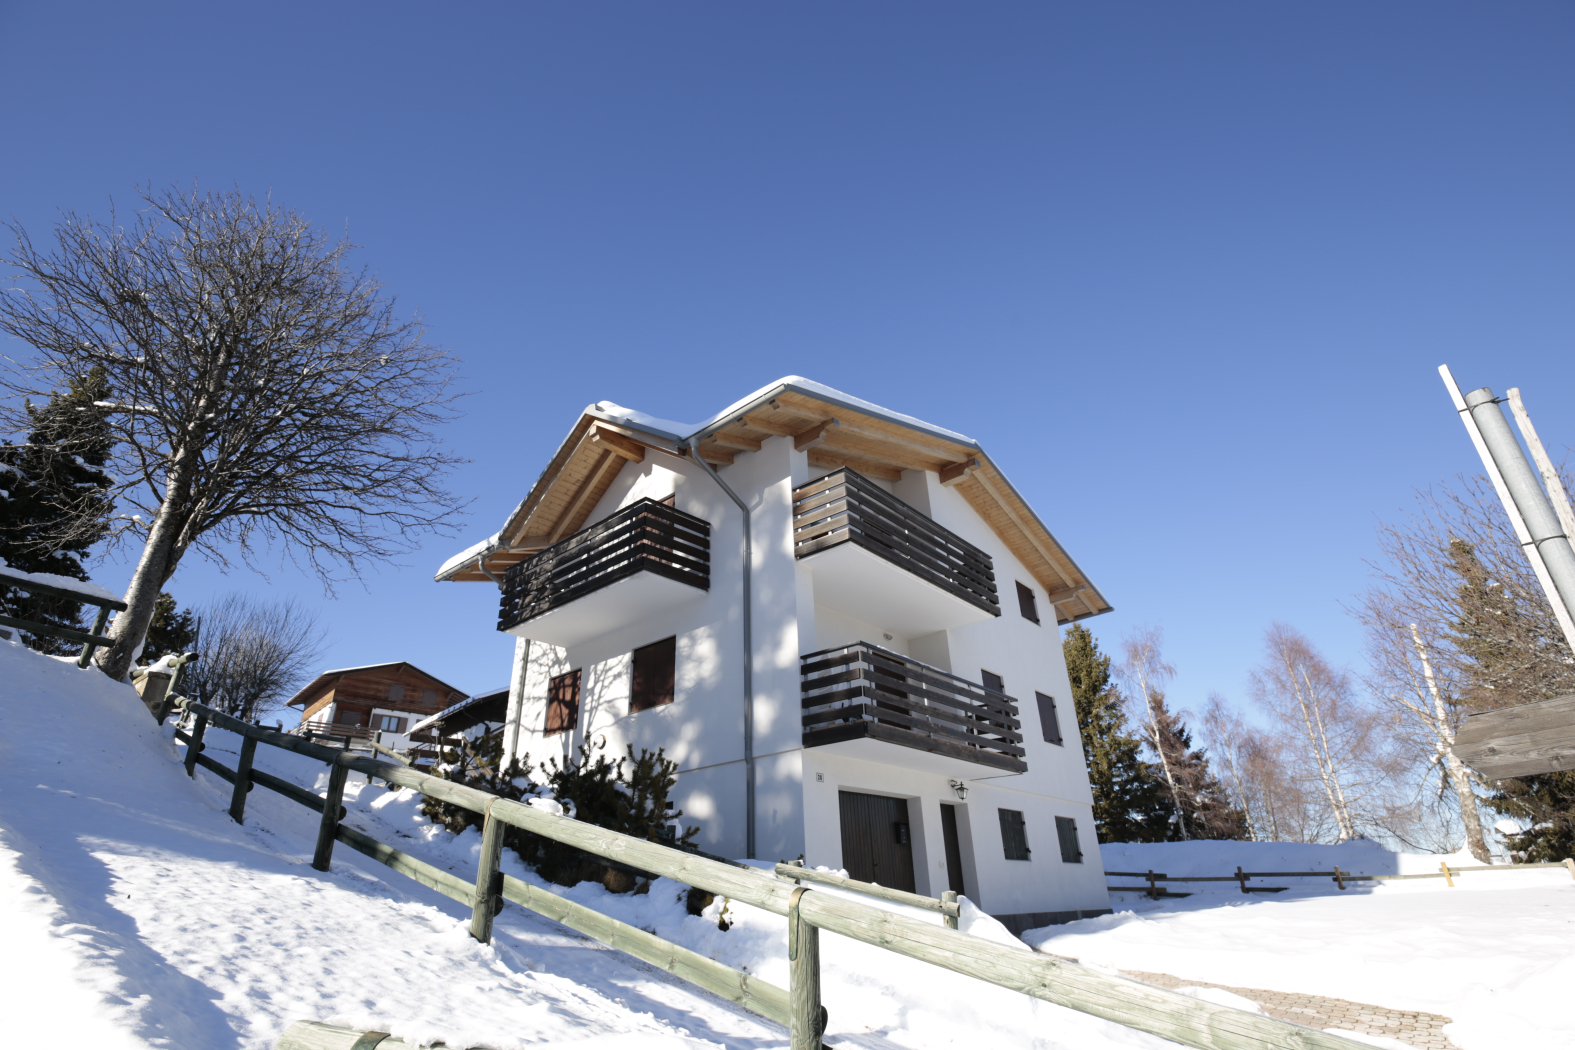 Vendita casa singola con due appartamenti a Vason-Monte Bondone, Trento